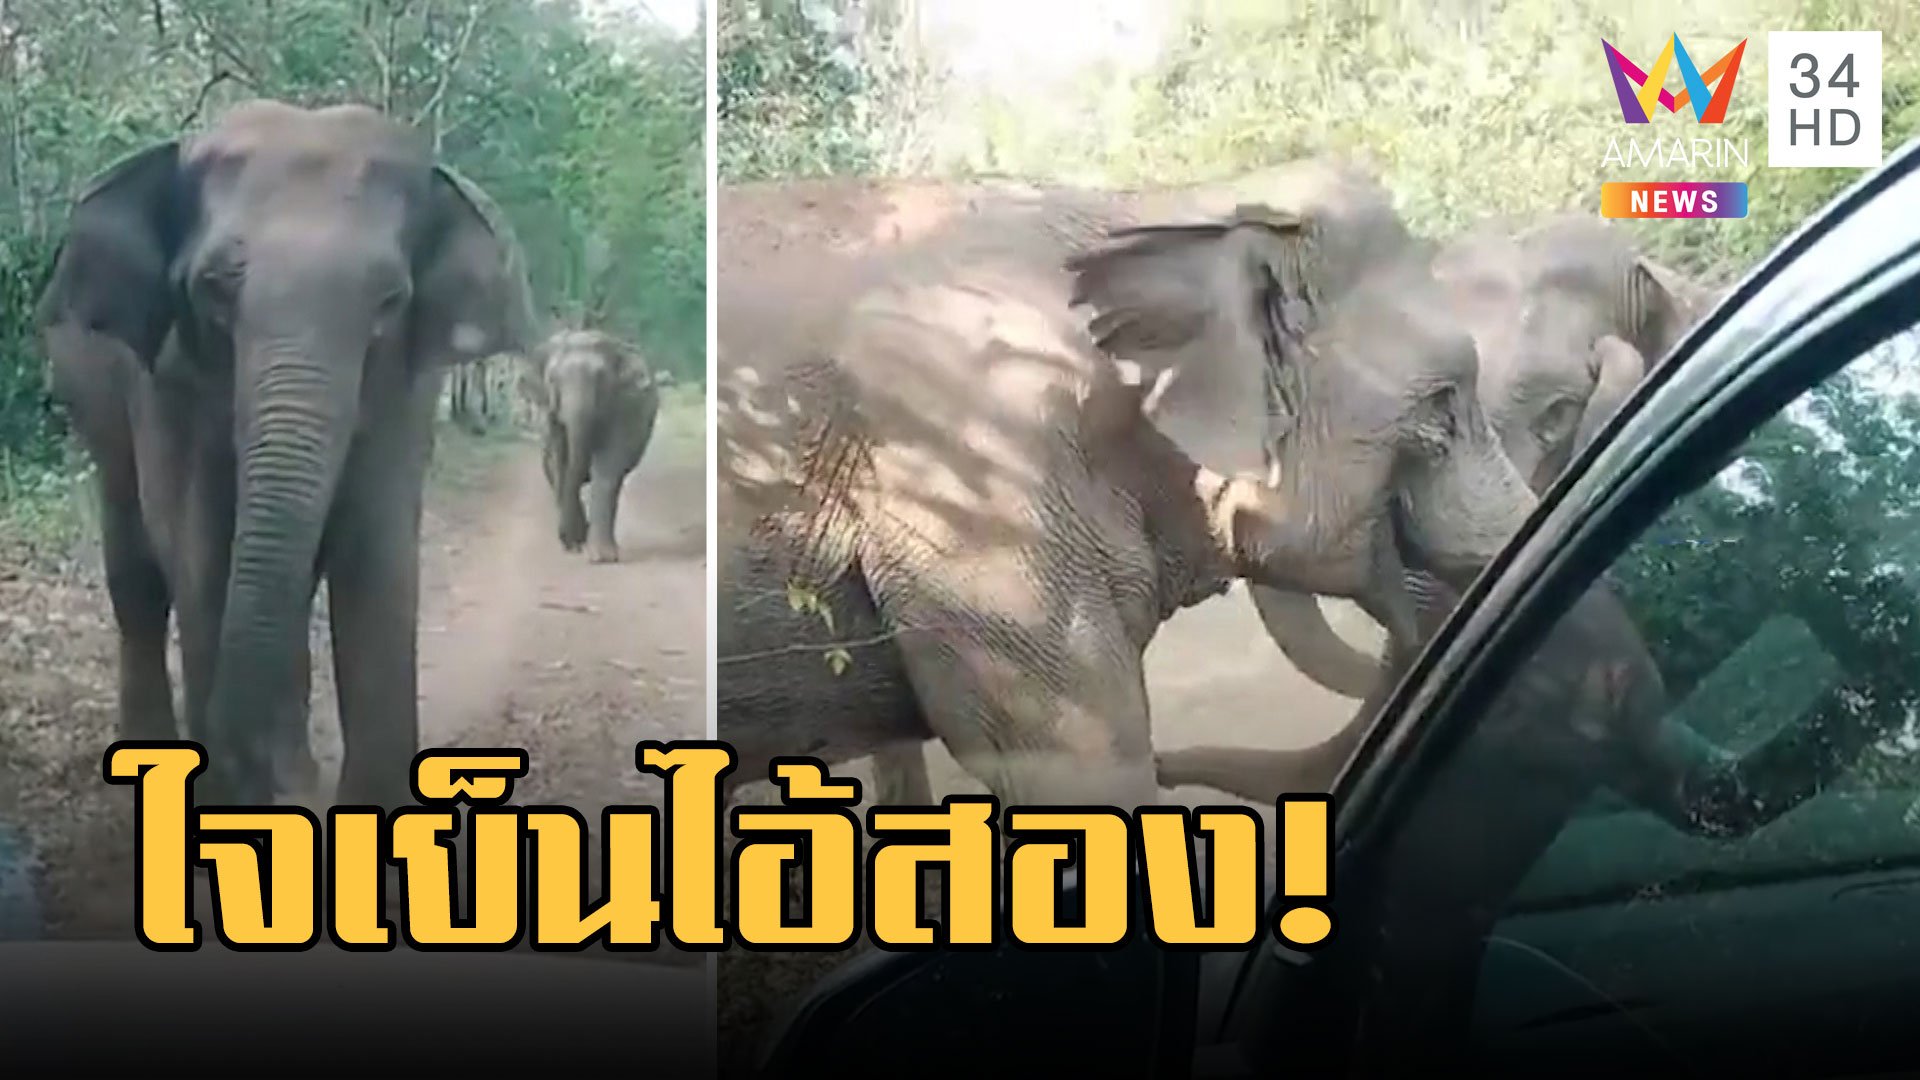 ช้างป่าวิ่งจะพุ่งชนรถ จนท. ช้างจ่าโขลงเข้าขวางไม่ให้ทำ | ข่าวอรุณอมรินทร์ | 25 มี.ค. 66 | AMARIN TVHD34